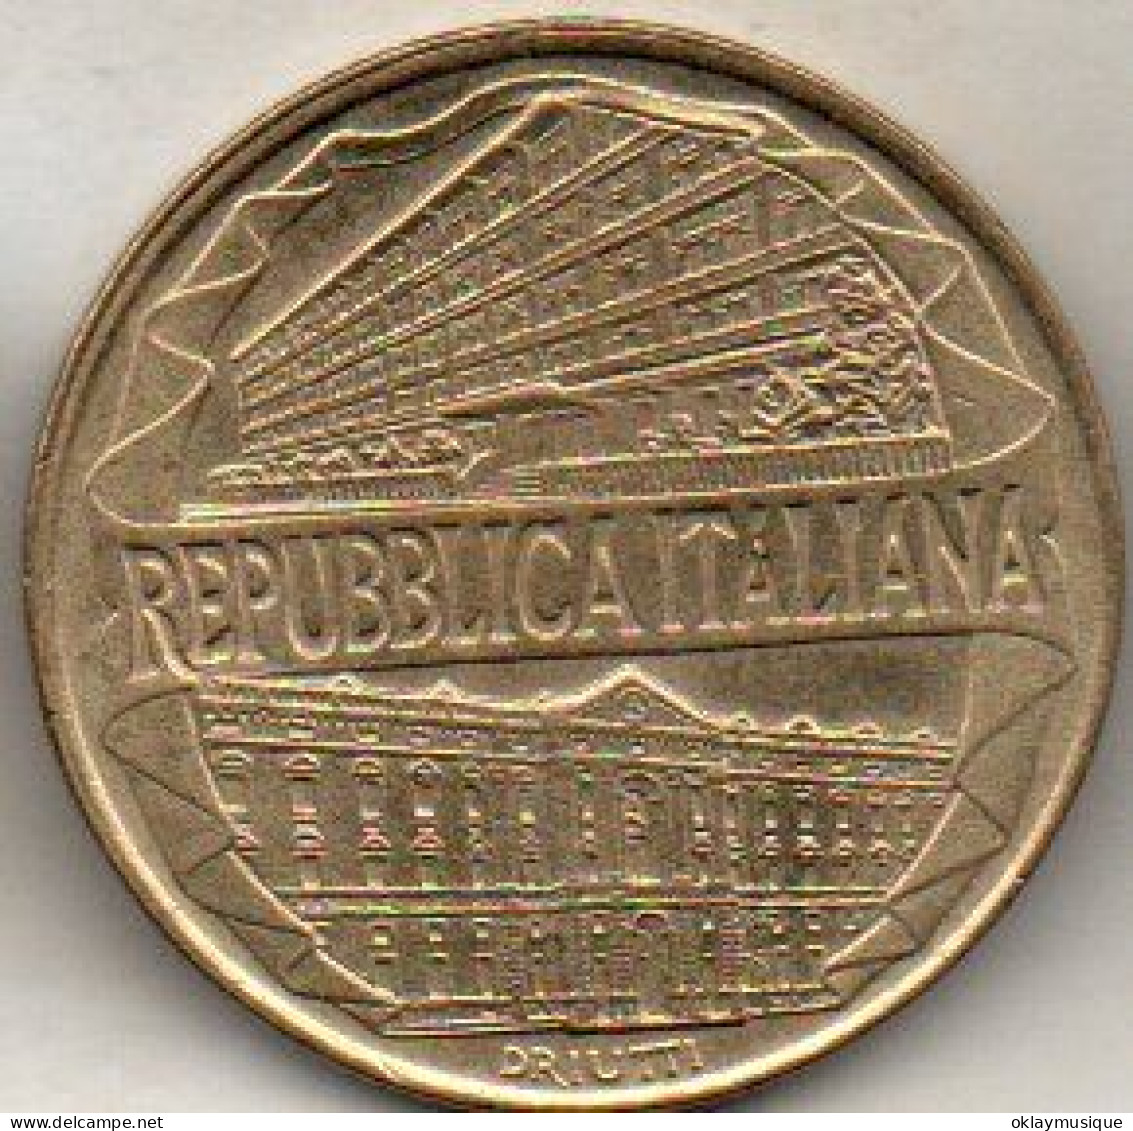 200 Lires 1996 - 200 Lire